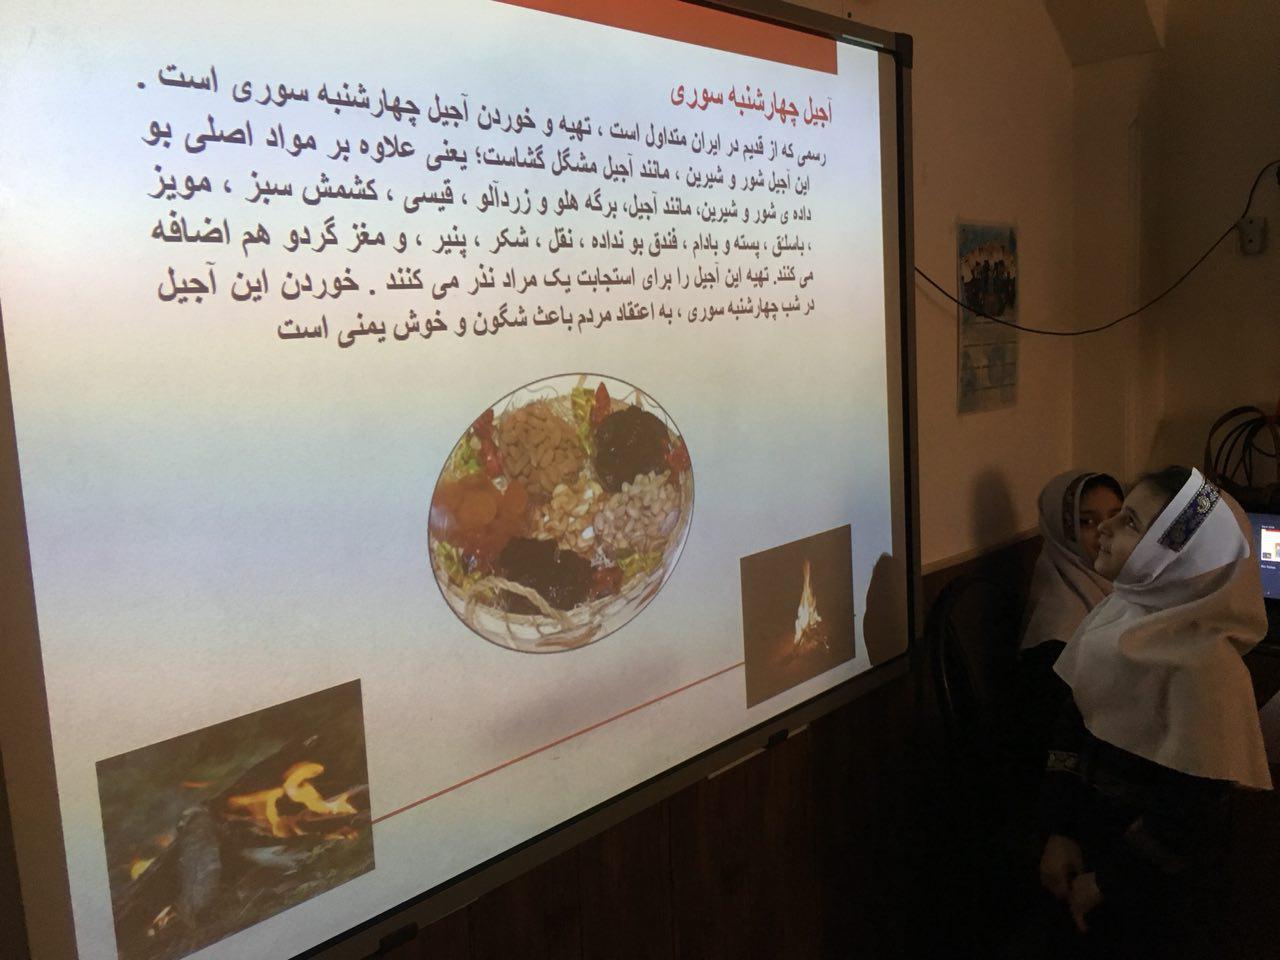 کنفرانس پرنیان صحرایی در مورد آداب و رسوم چهارشنبه سوری